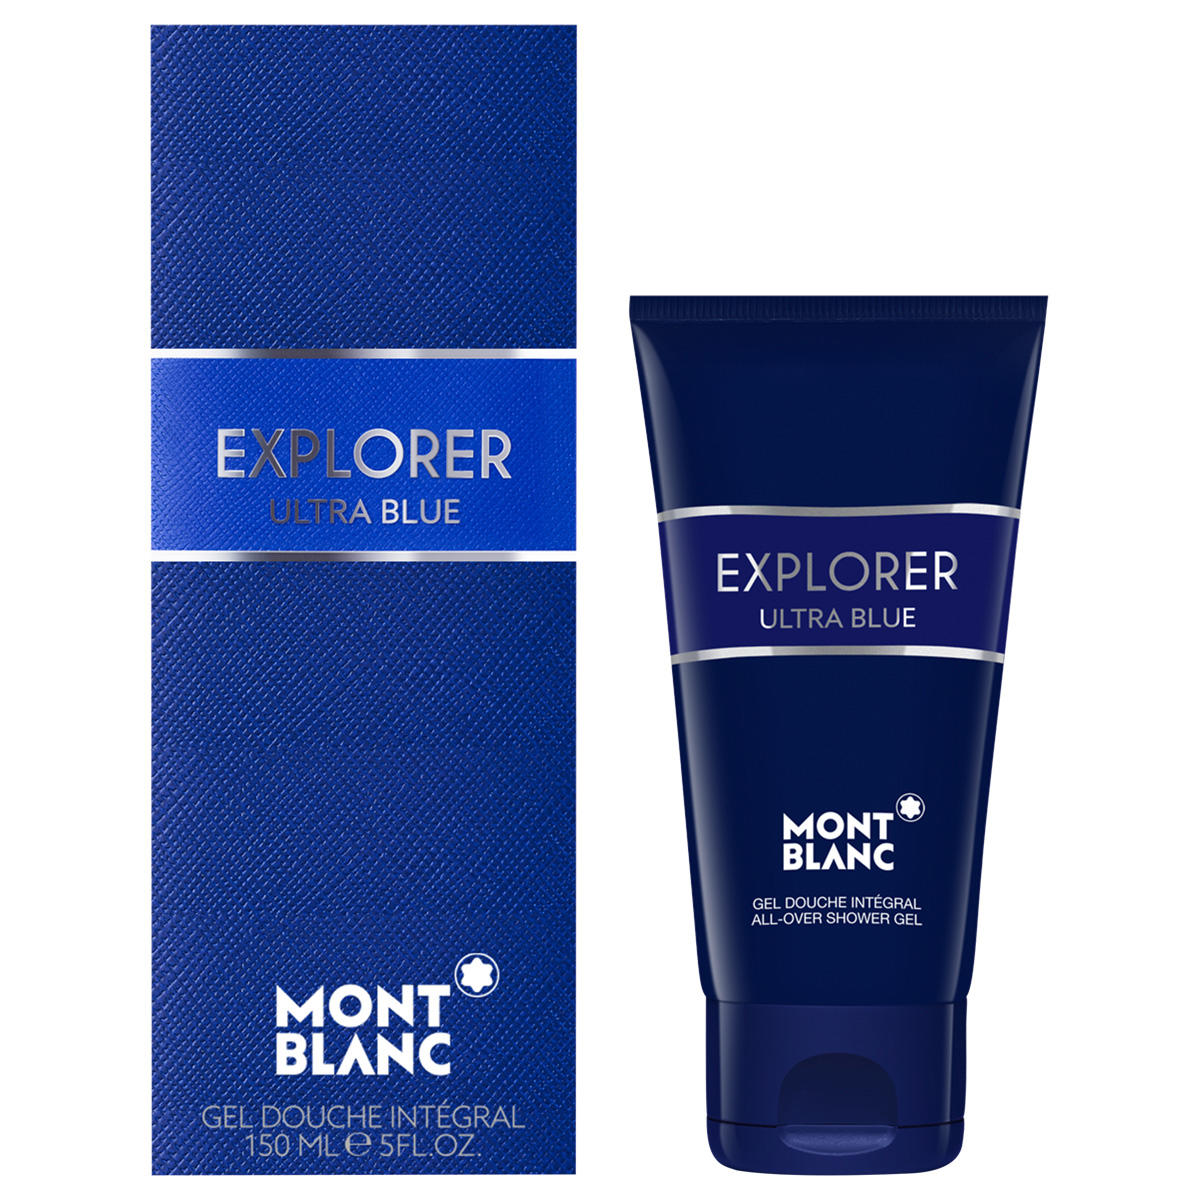 Montblanc Explorer Ultra Blue Duschgel 150 ml - 1